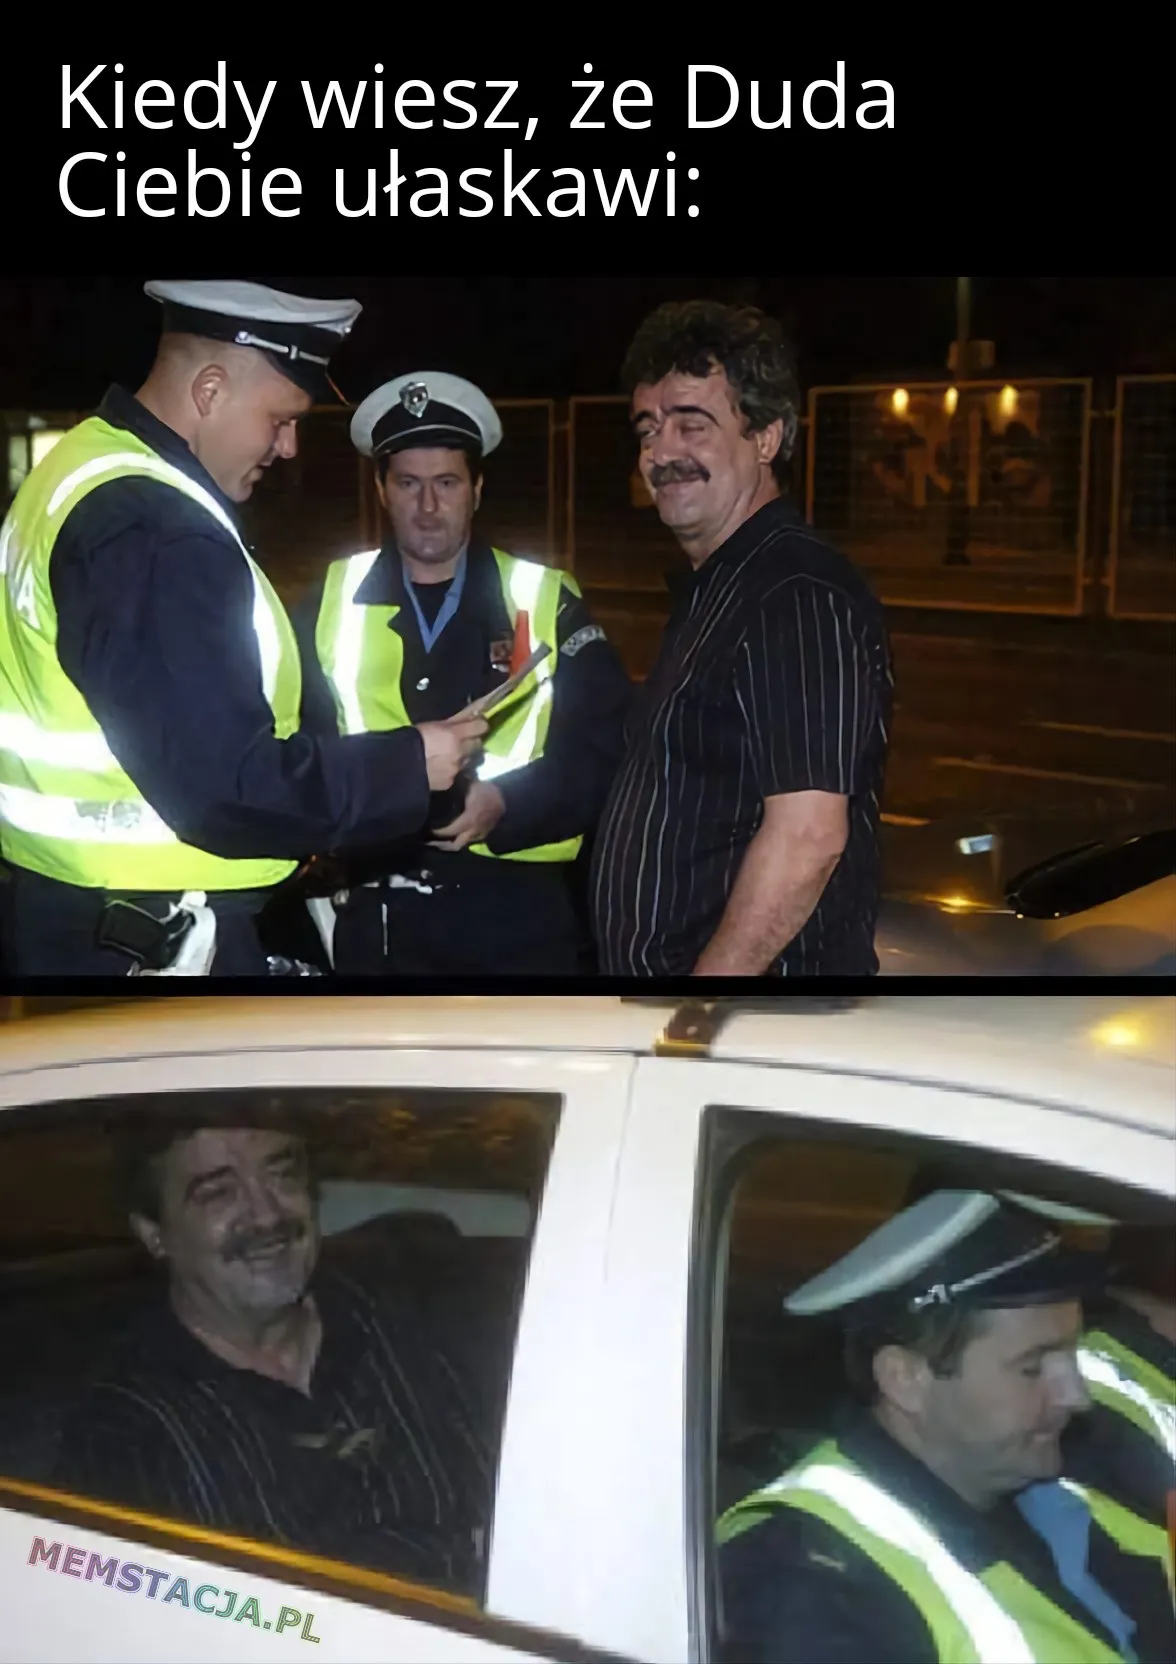 Mem przedstawiający zadowolonego mężczyznę w towarzystwie policjantów: 'Kiedy wiesz, że Duda Ciebie ułaskawi'